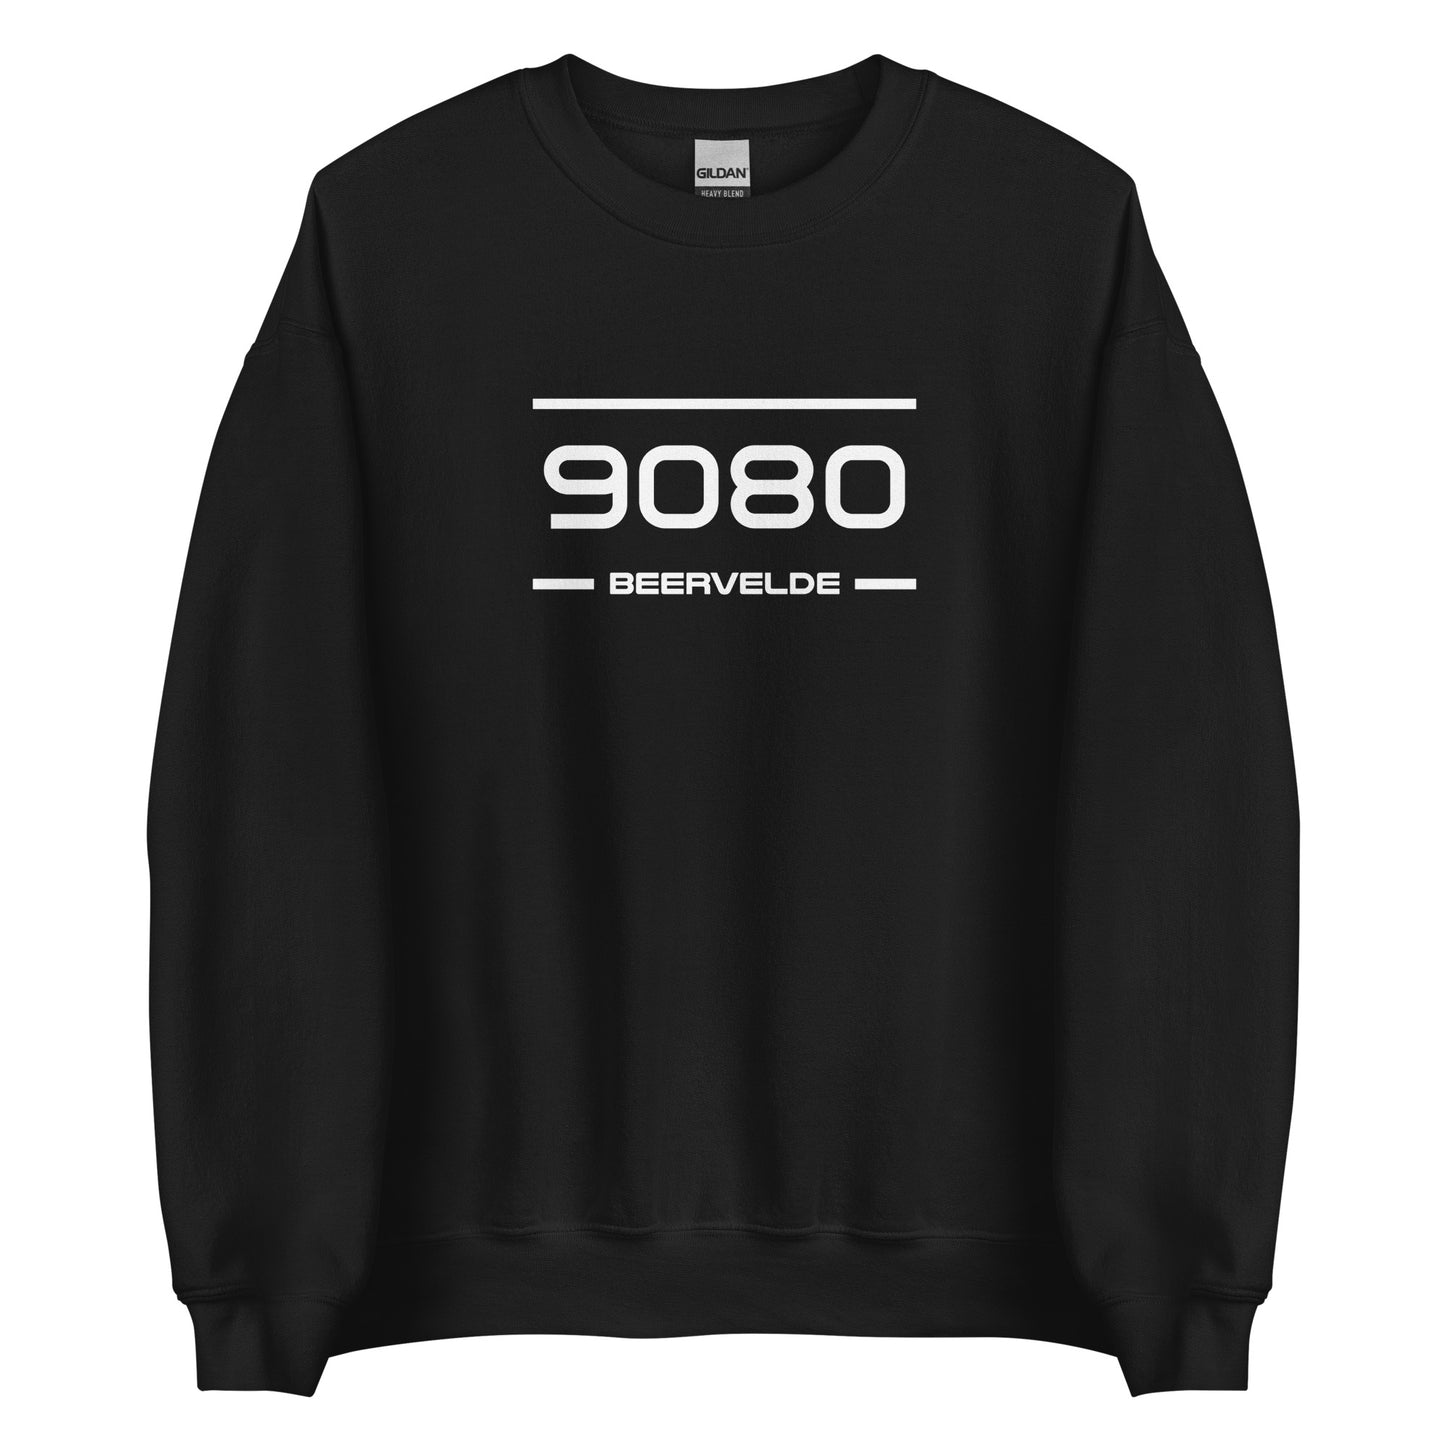 Sweater - 9080 - Beervelde (M/V)